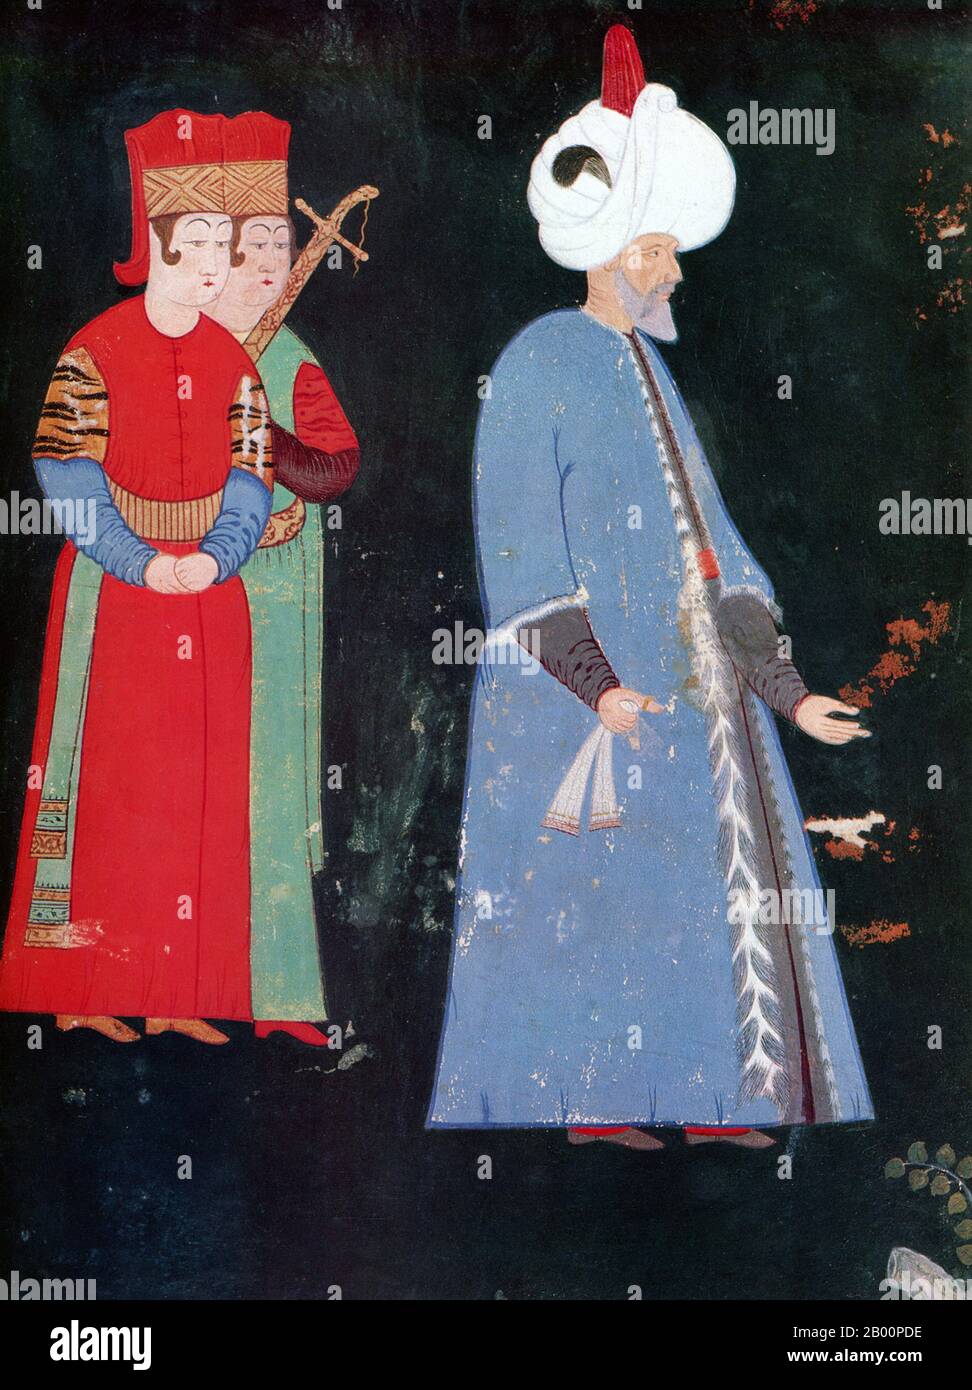 Turchia: Suleiman i (1494-1566), meglio conosciuto come Suleiman il magnifico. Miniatura di un artista sconosciuto, fine 16 ° secolo. Suleiman i era il decimo sultano dell'Impero Ottomano, dal 1520 alla sua morte nel 1566. È conosciuto in Occidente come Suleiman il magnifico e in Oriente, come il legislatore per la sua completa ricostruzione del sistema giuridico ottomano. Suleiman divenne un monarca prominente dell'Europa del XVI secolo, presiede l'apice del potere militare, politico ed economico dell'Impero Ottomano. Foto Stock